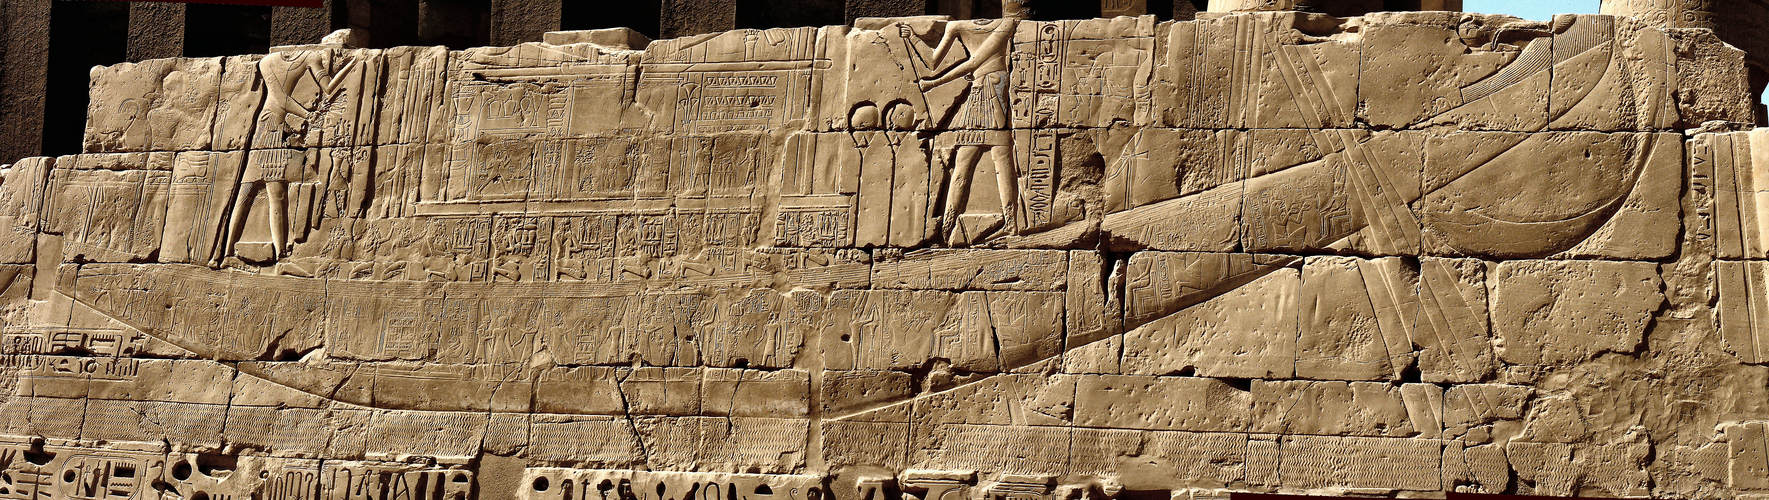 Karnak – zwischen 3. + 4. Pylon – Außenseite nördliche Ostwand 3. Pylon